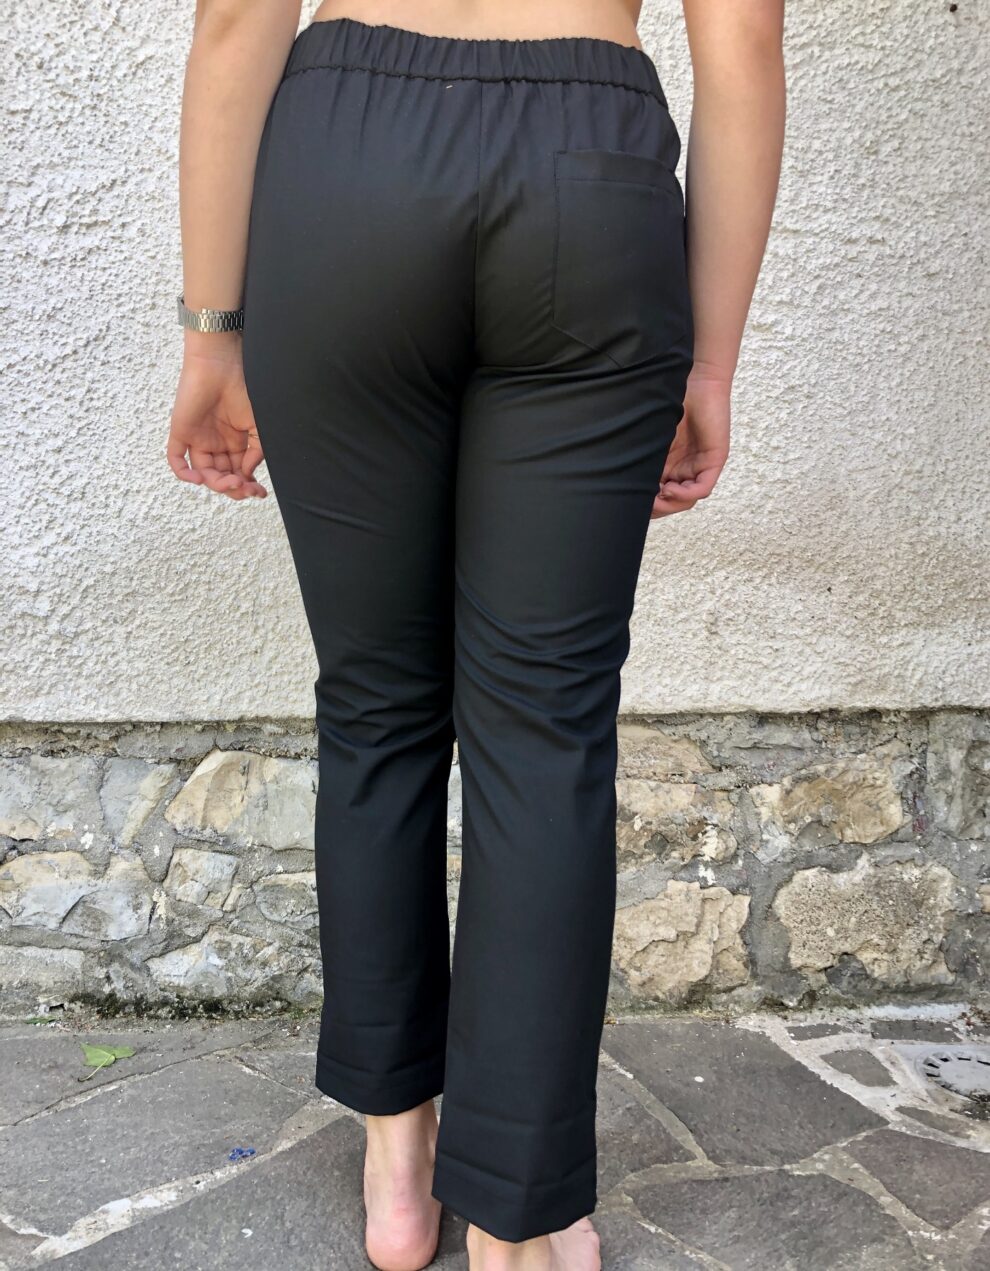 Pantalone Nero Nam particolare - dietro